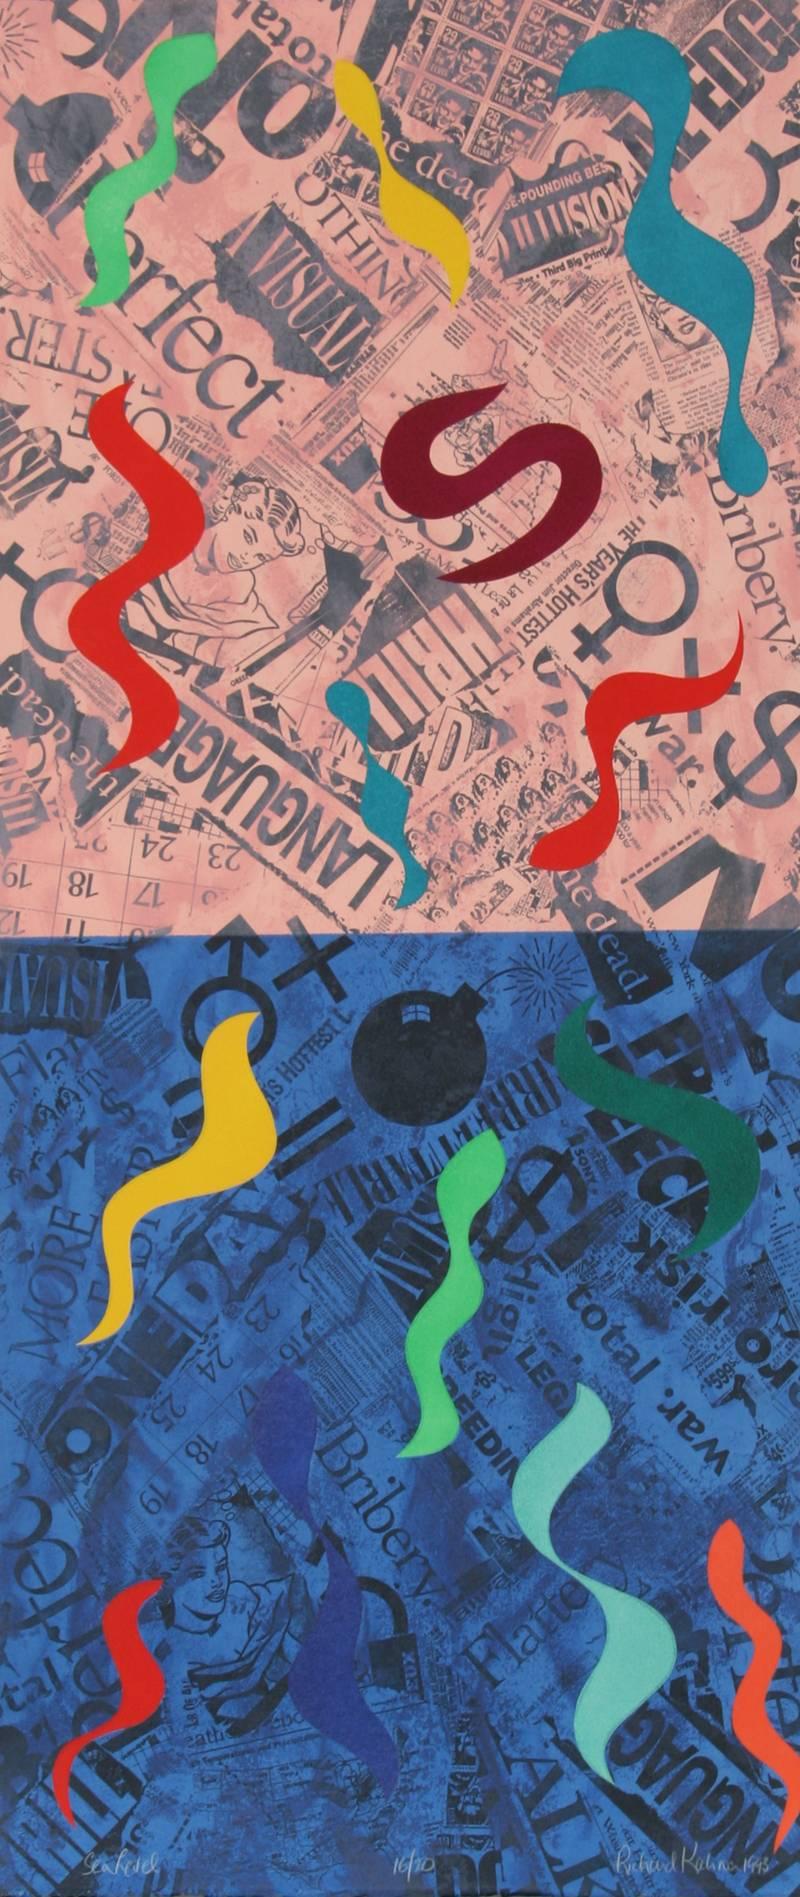 Artiste :	Richard Kalina
Titre :	Niveau de la mer
Année : 1993
Moyen :	Lithographie avec collage, signée et numérotée au crayon
Edition :	20
Taille du papier : 42 in. x 18 in. (106,68 cm x 45,72 cm)